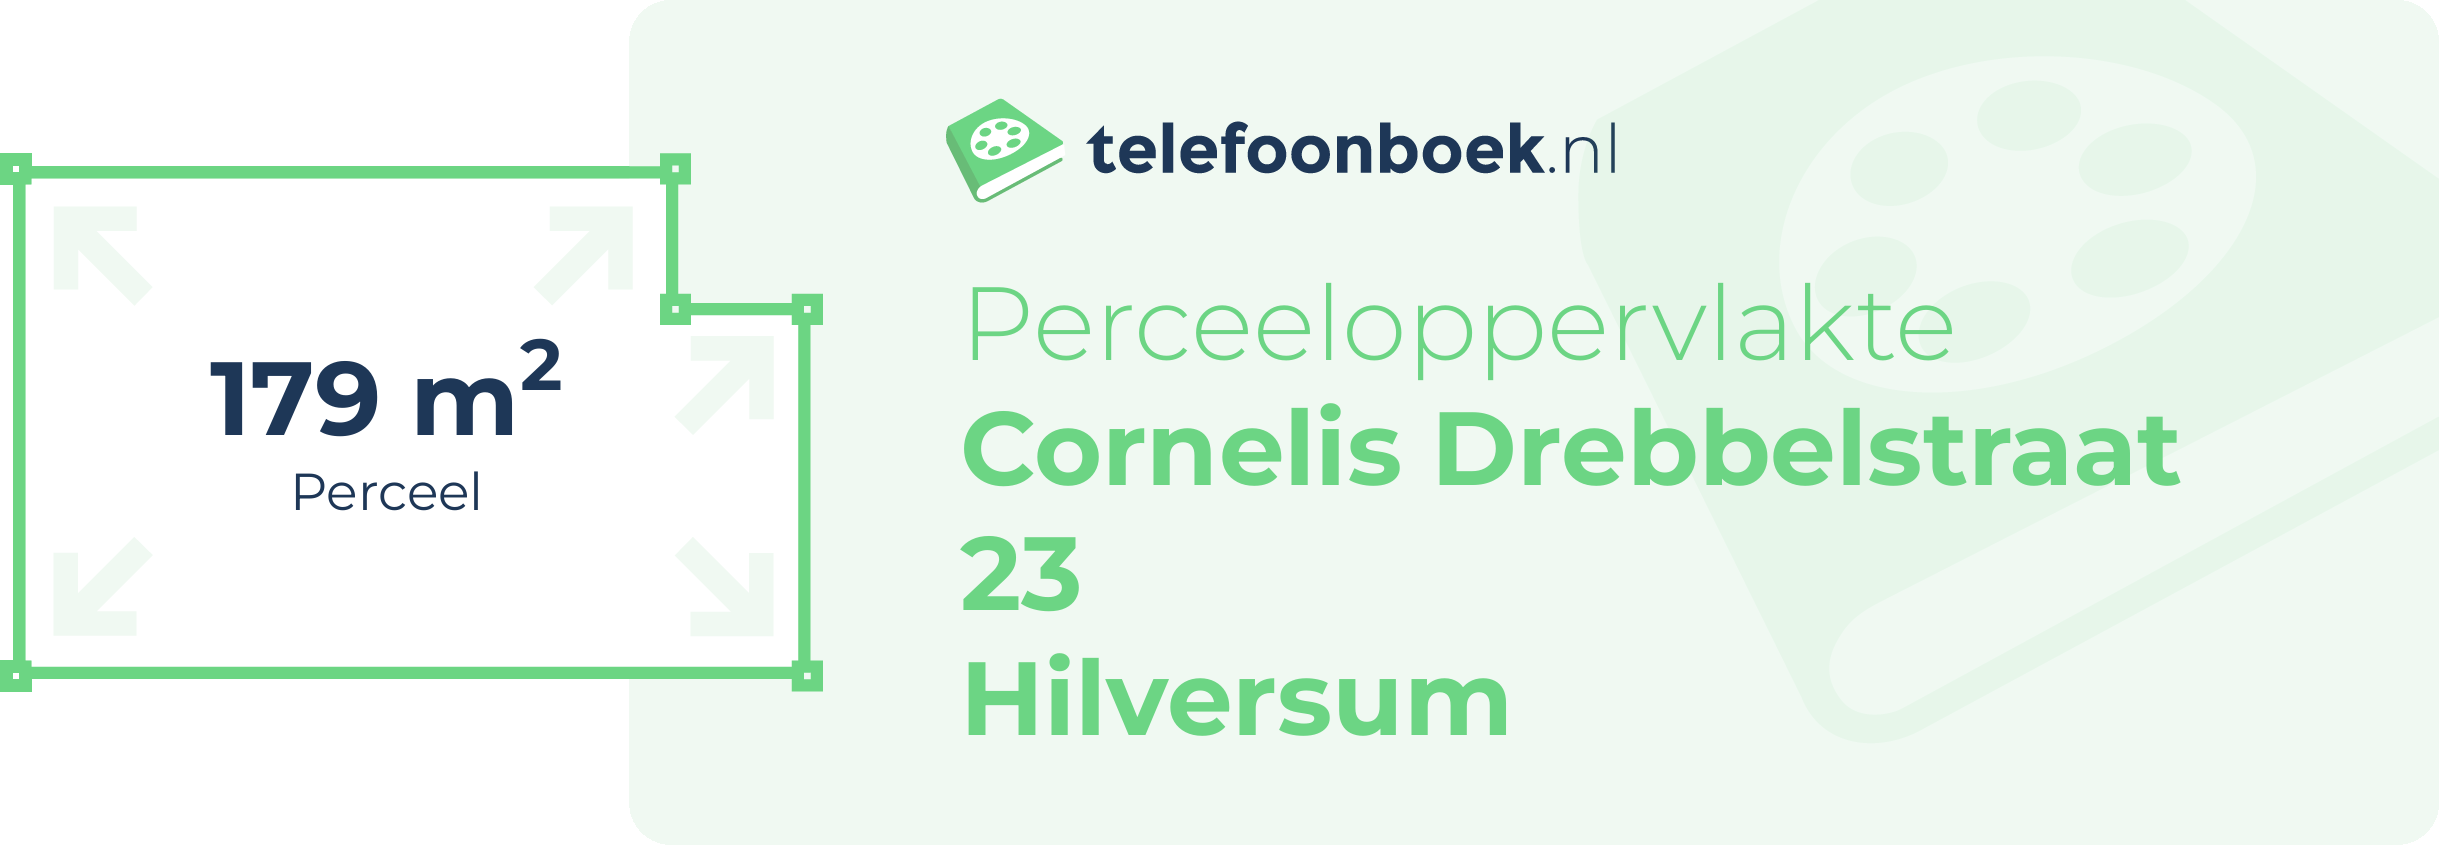 Perceeloppervlakte Cornelis Drebbelstraat 23 Hilversum